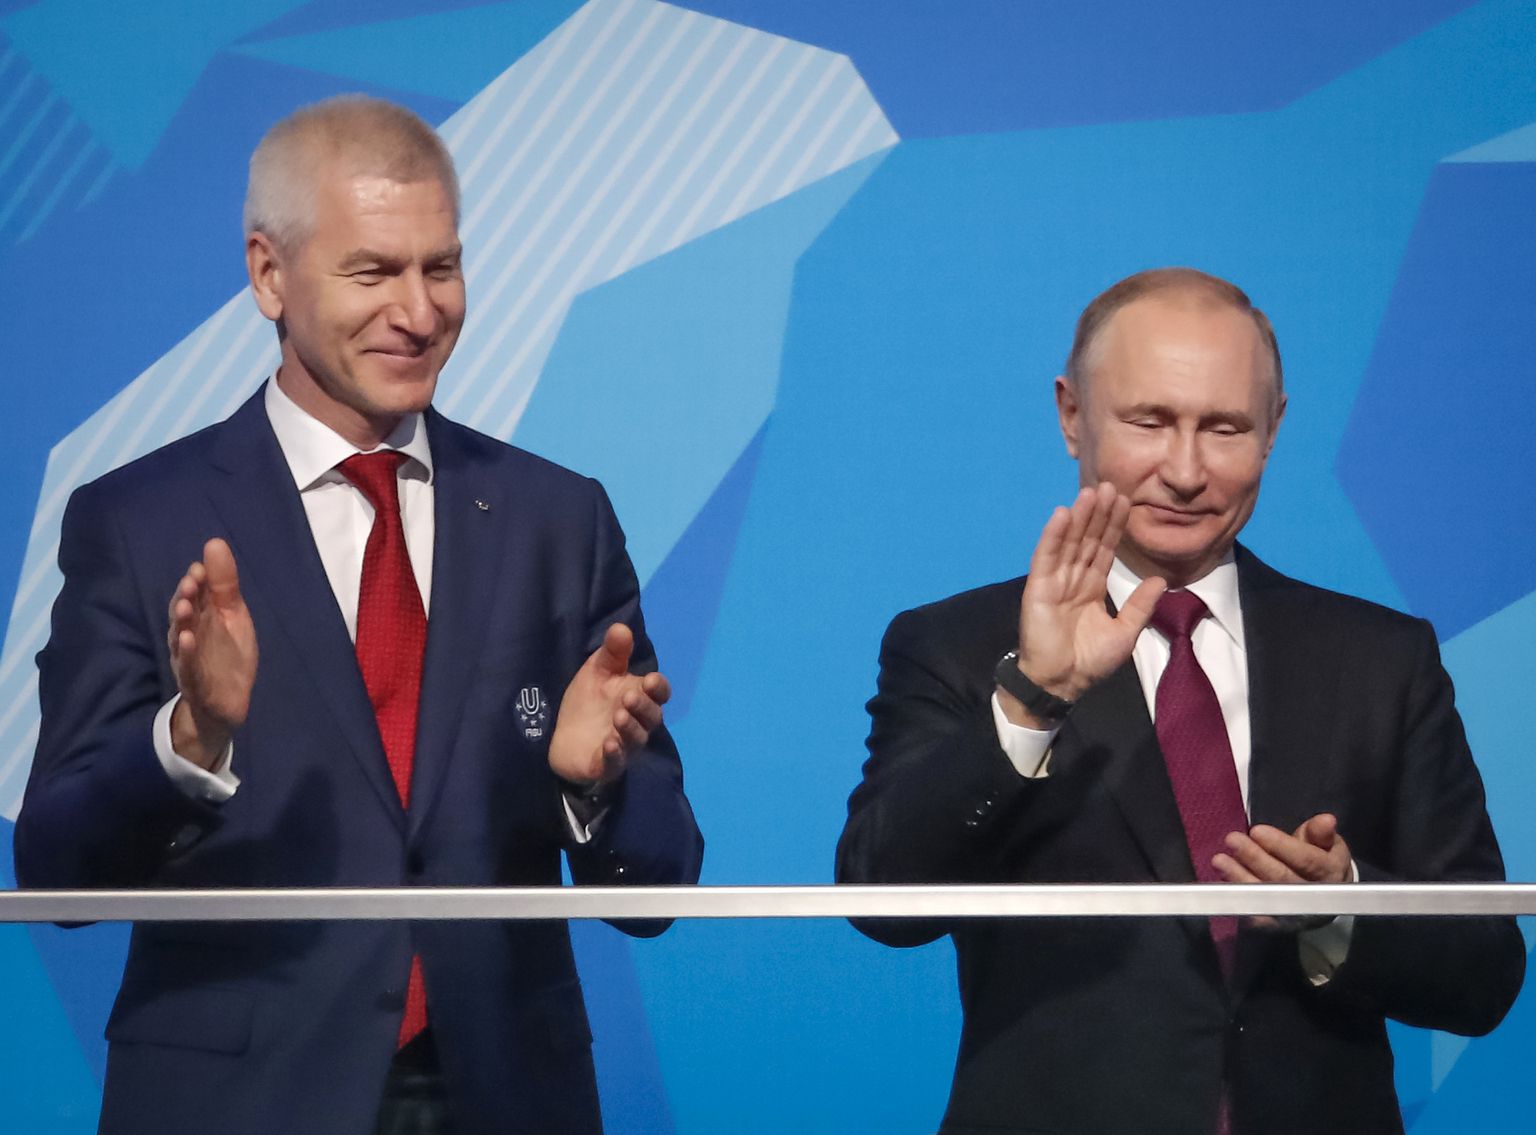 Venemaa spordiminister Oleg Matõtsin (vasakul) koos riigipea Vladimir Putiniga.